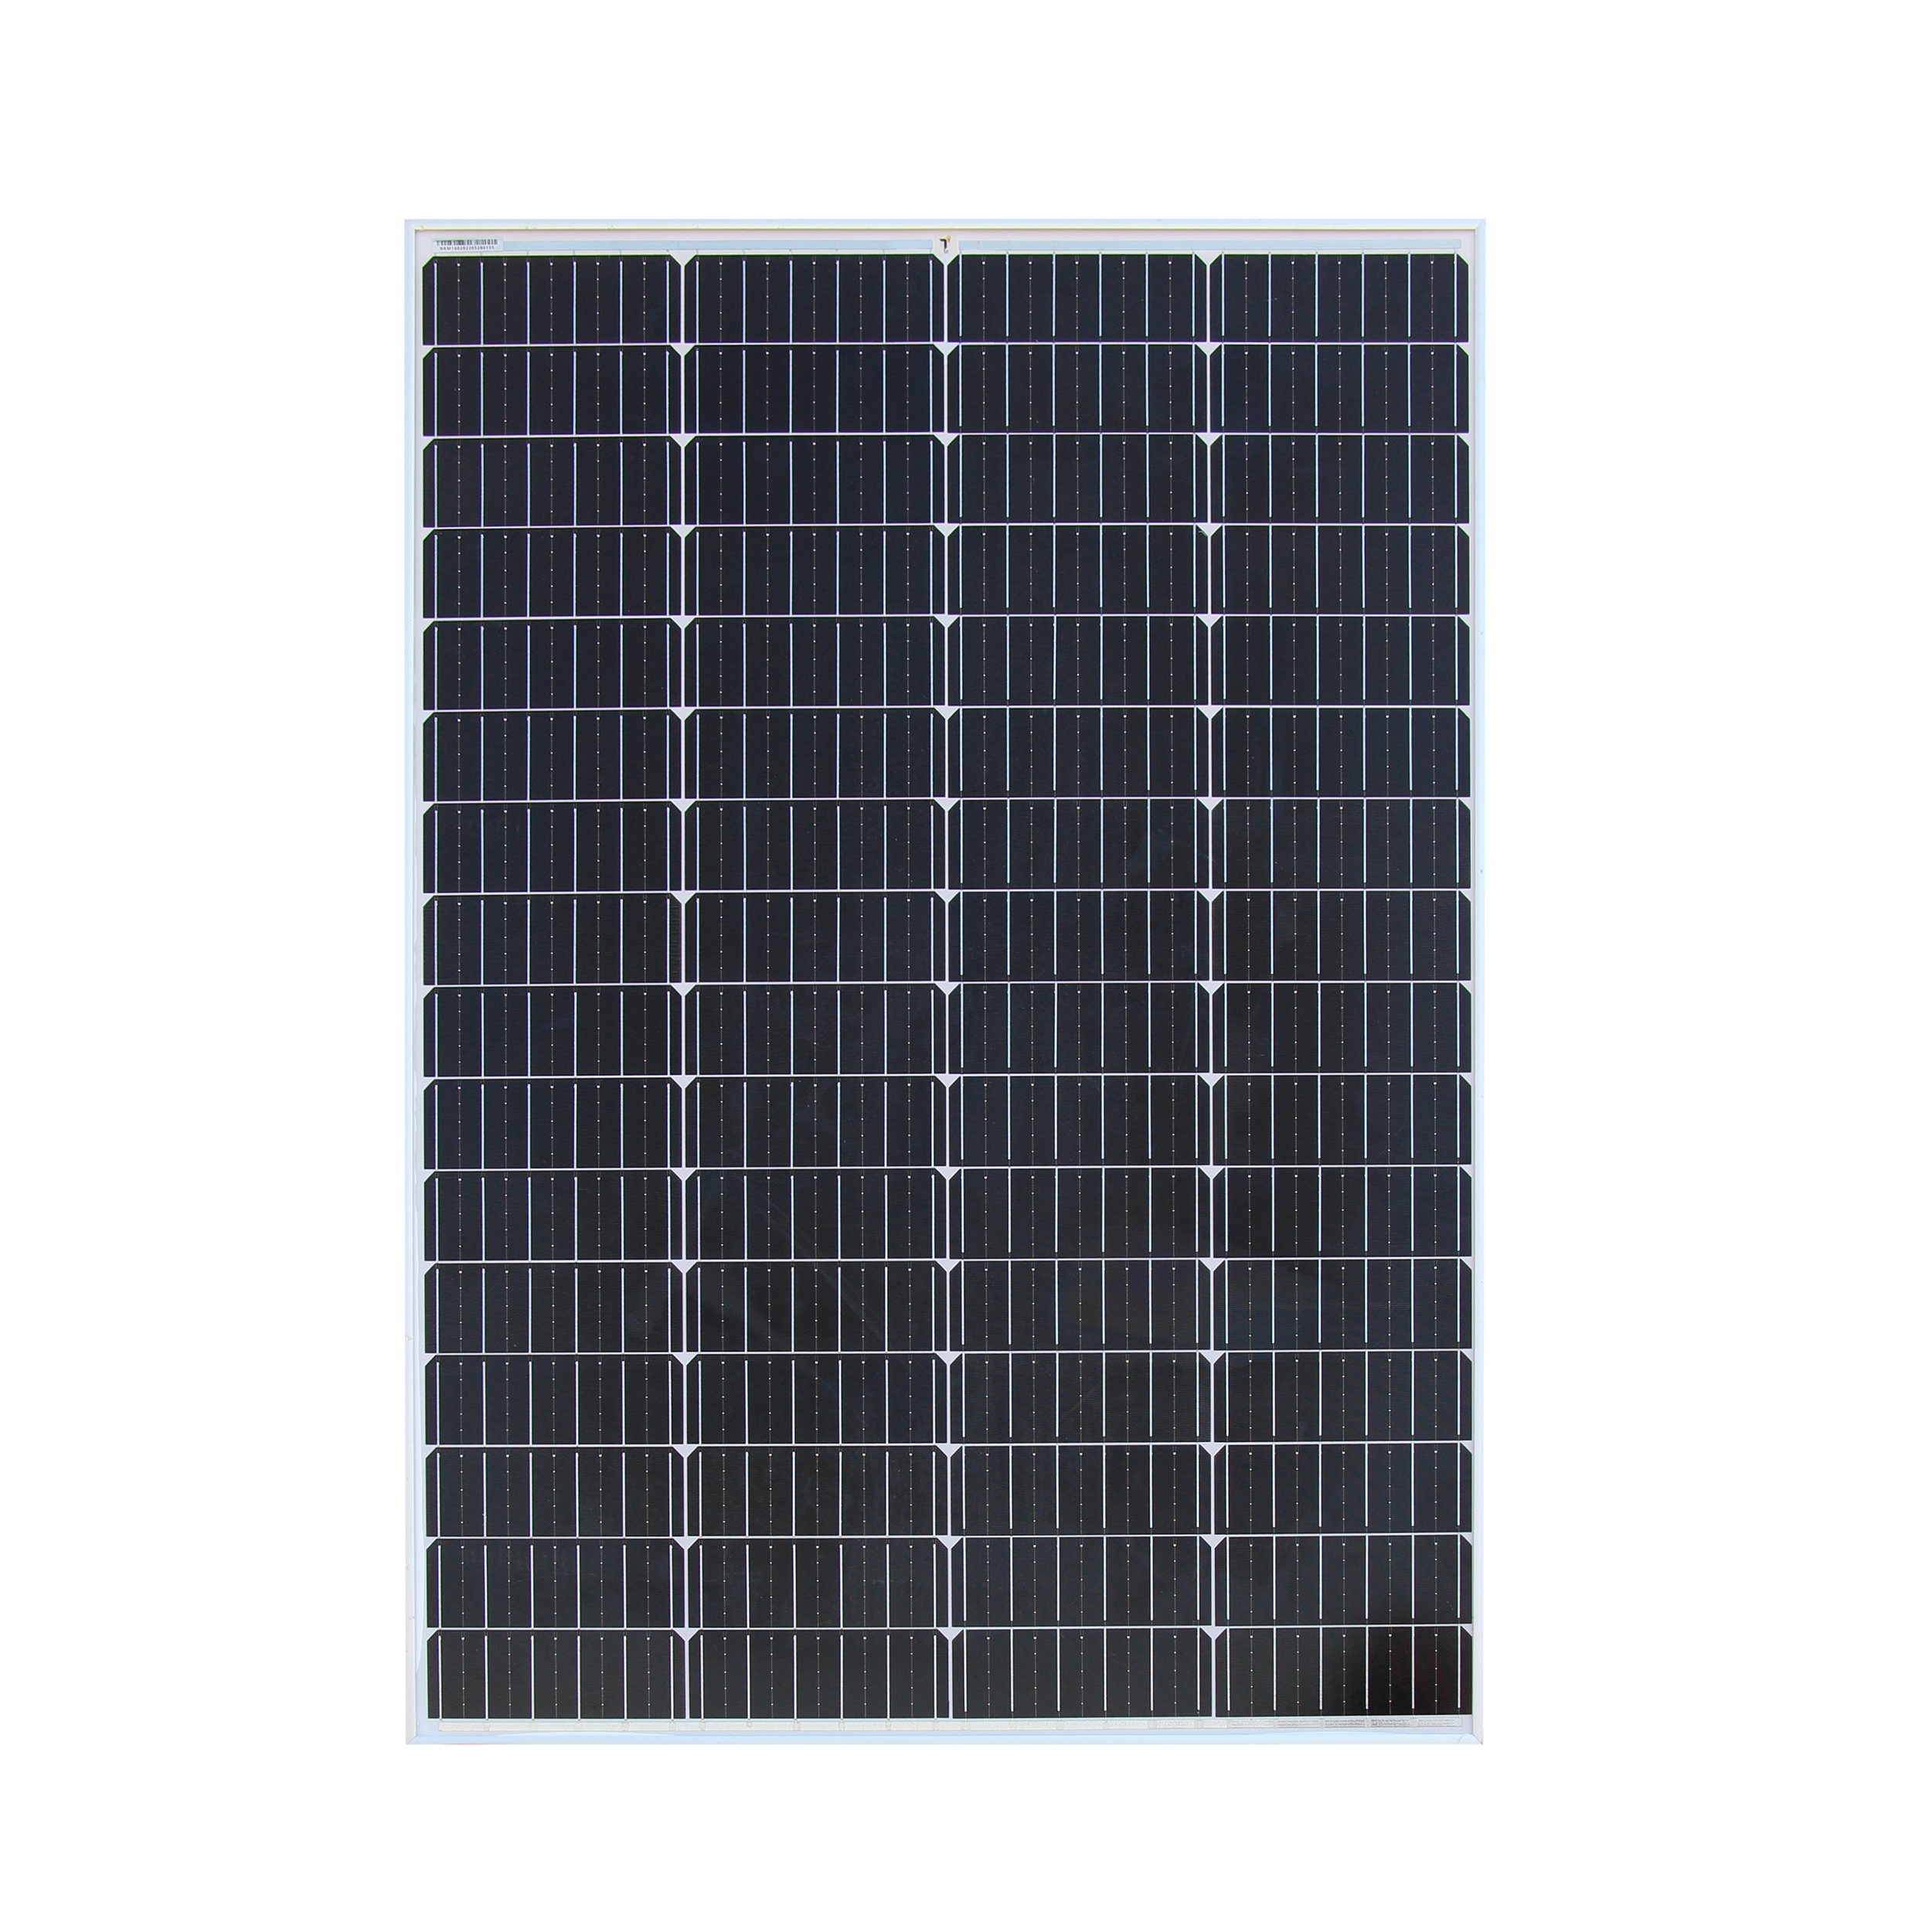 نکته خرید - قیمت روز پنل خورشیدی تیسو مدل TM160W-18V ظرفیت 160 وات خرید